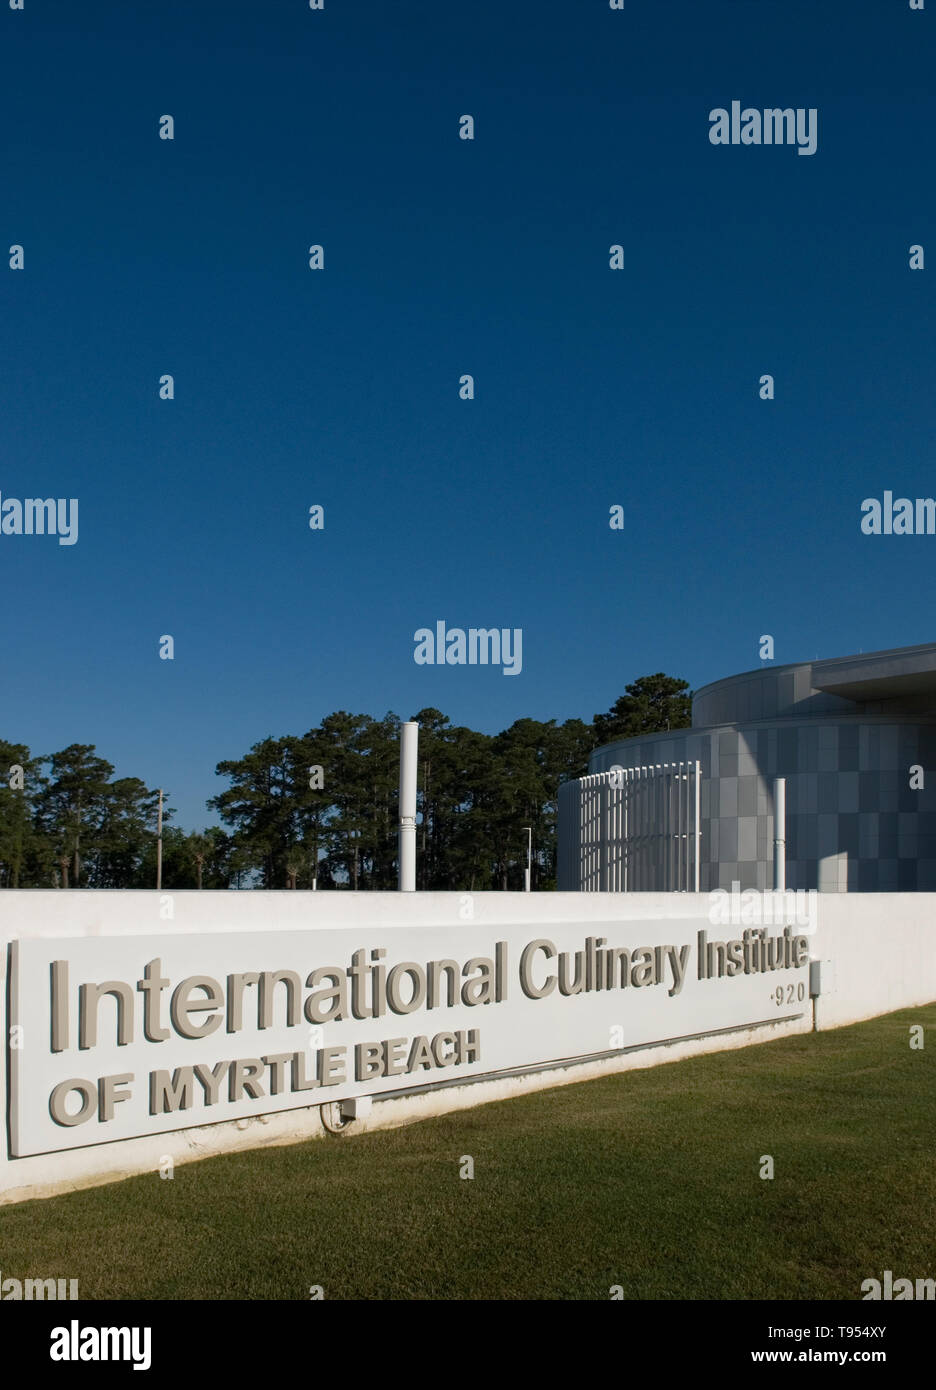 Institut culinaire internationale commune du marché, Myrtle Beach en Caroline du Sud USA Banque D'Images